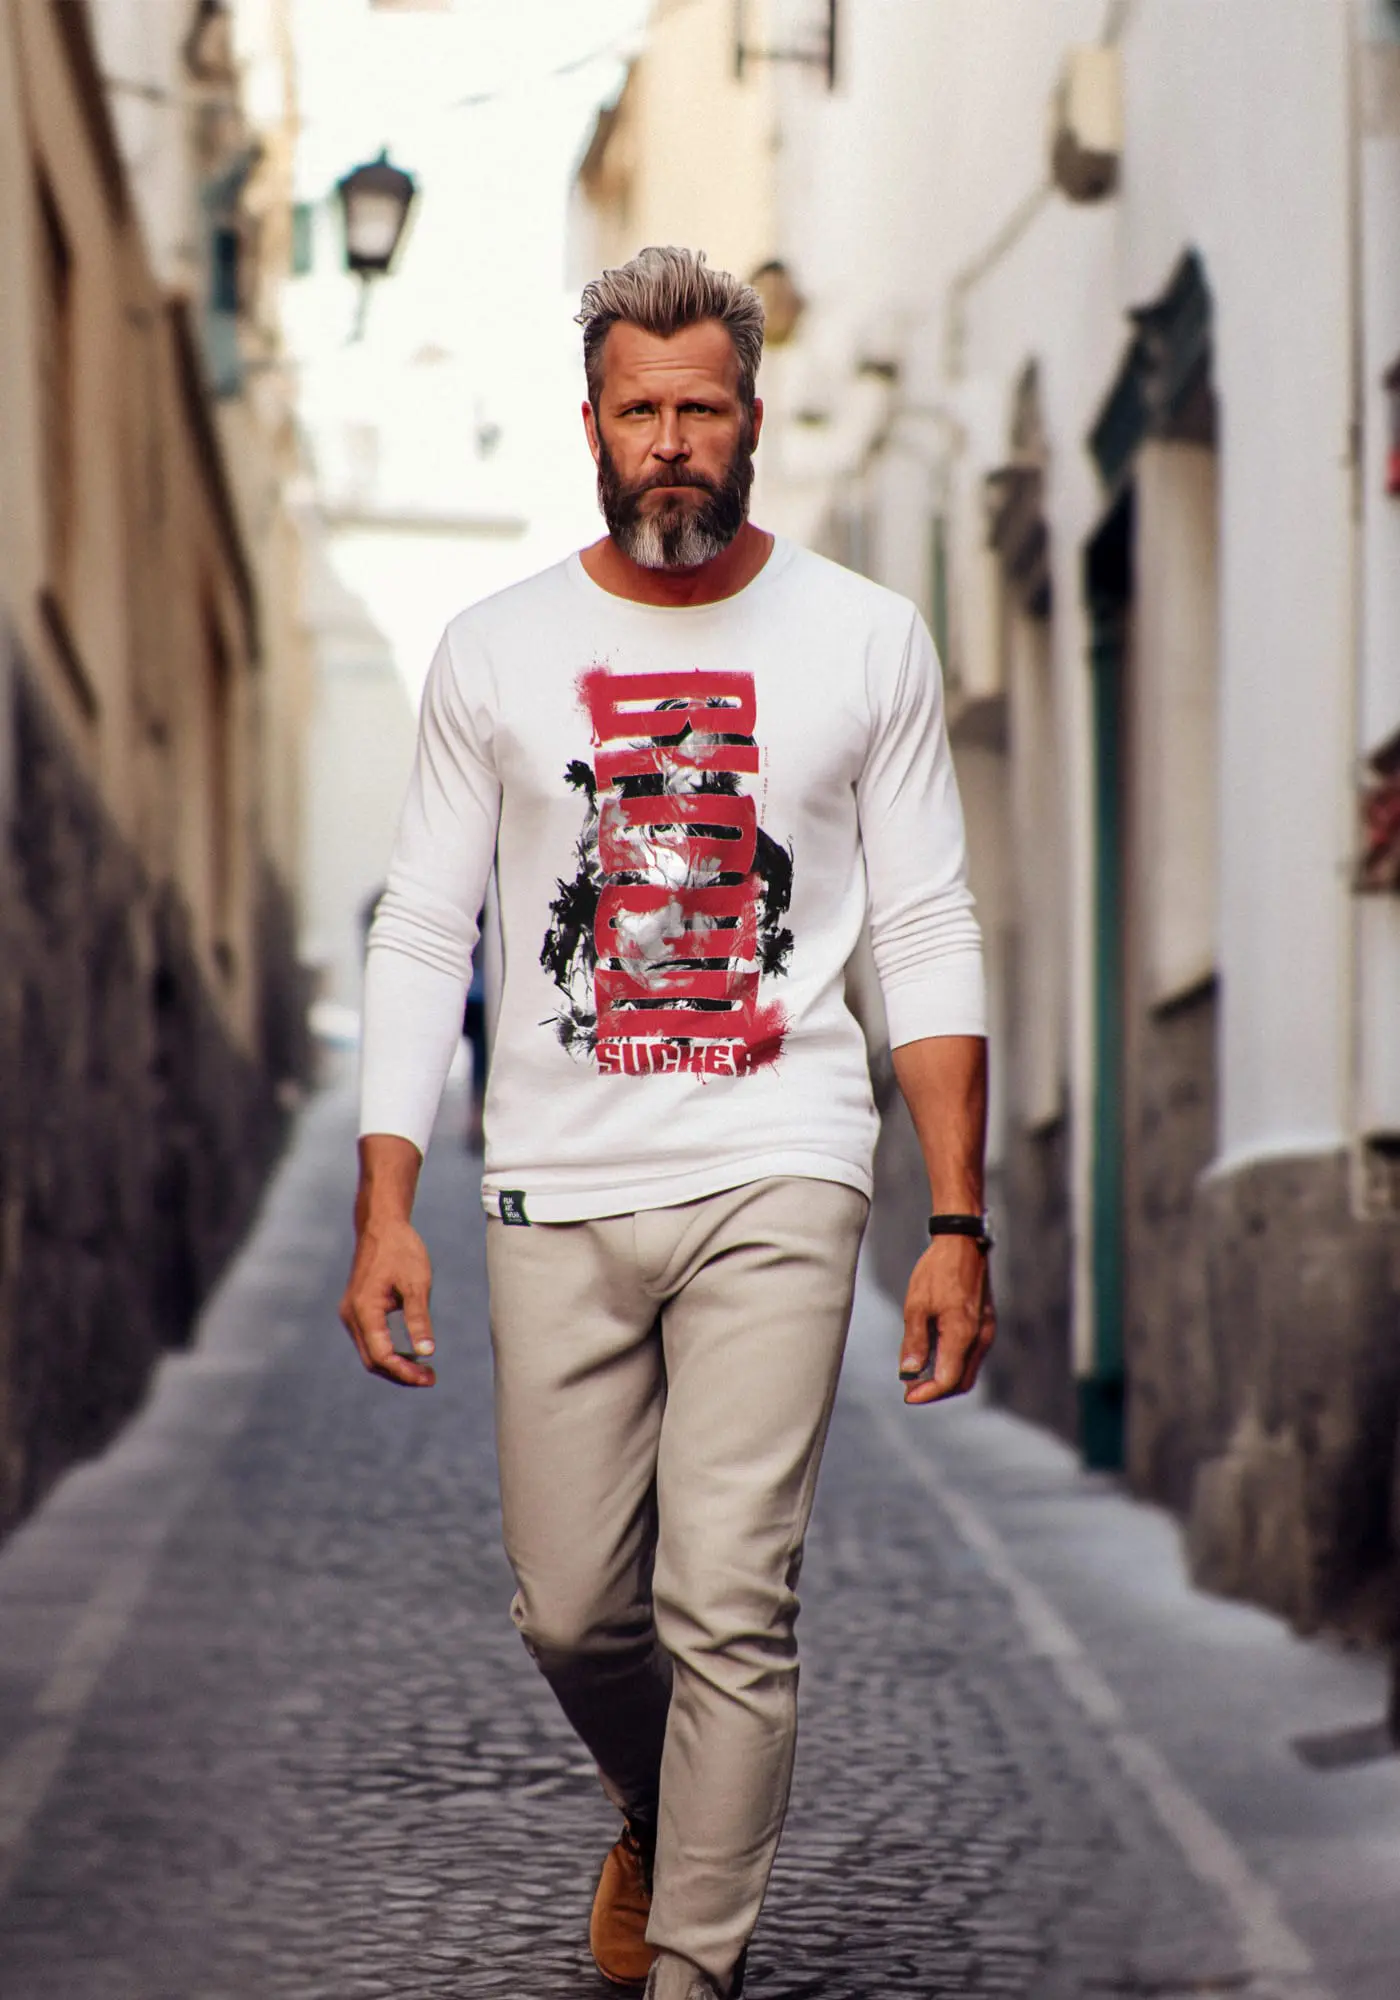 Model Matt trägt das weiße Bloodsucker Herren langarmshirt in urbaner Straßenumgebung